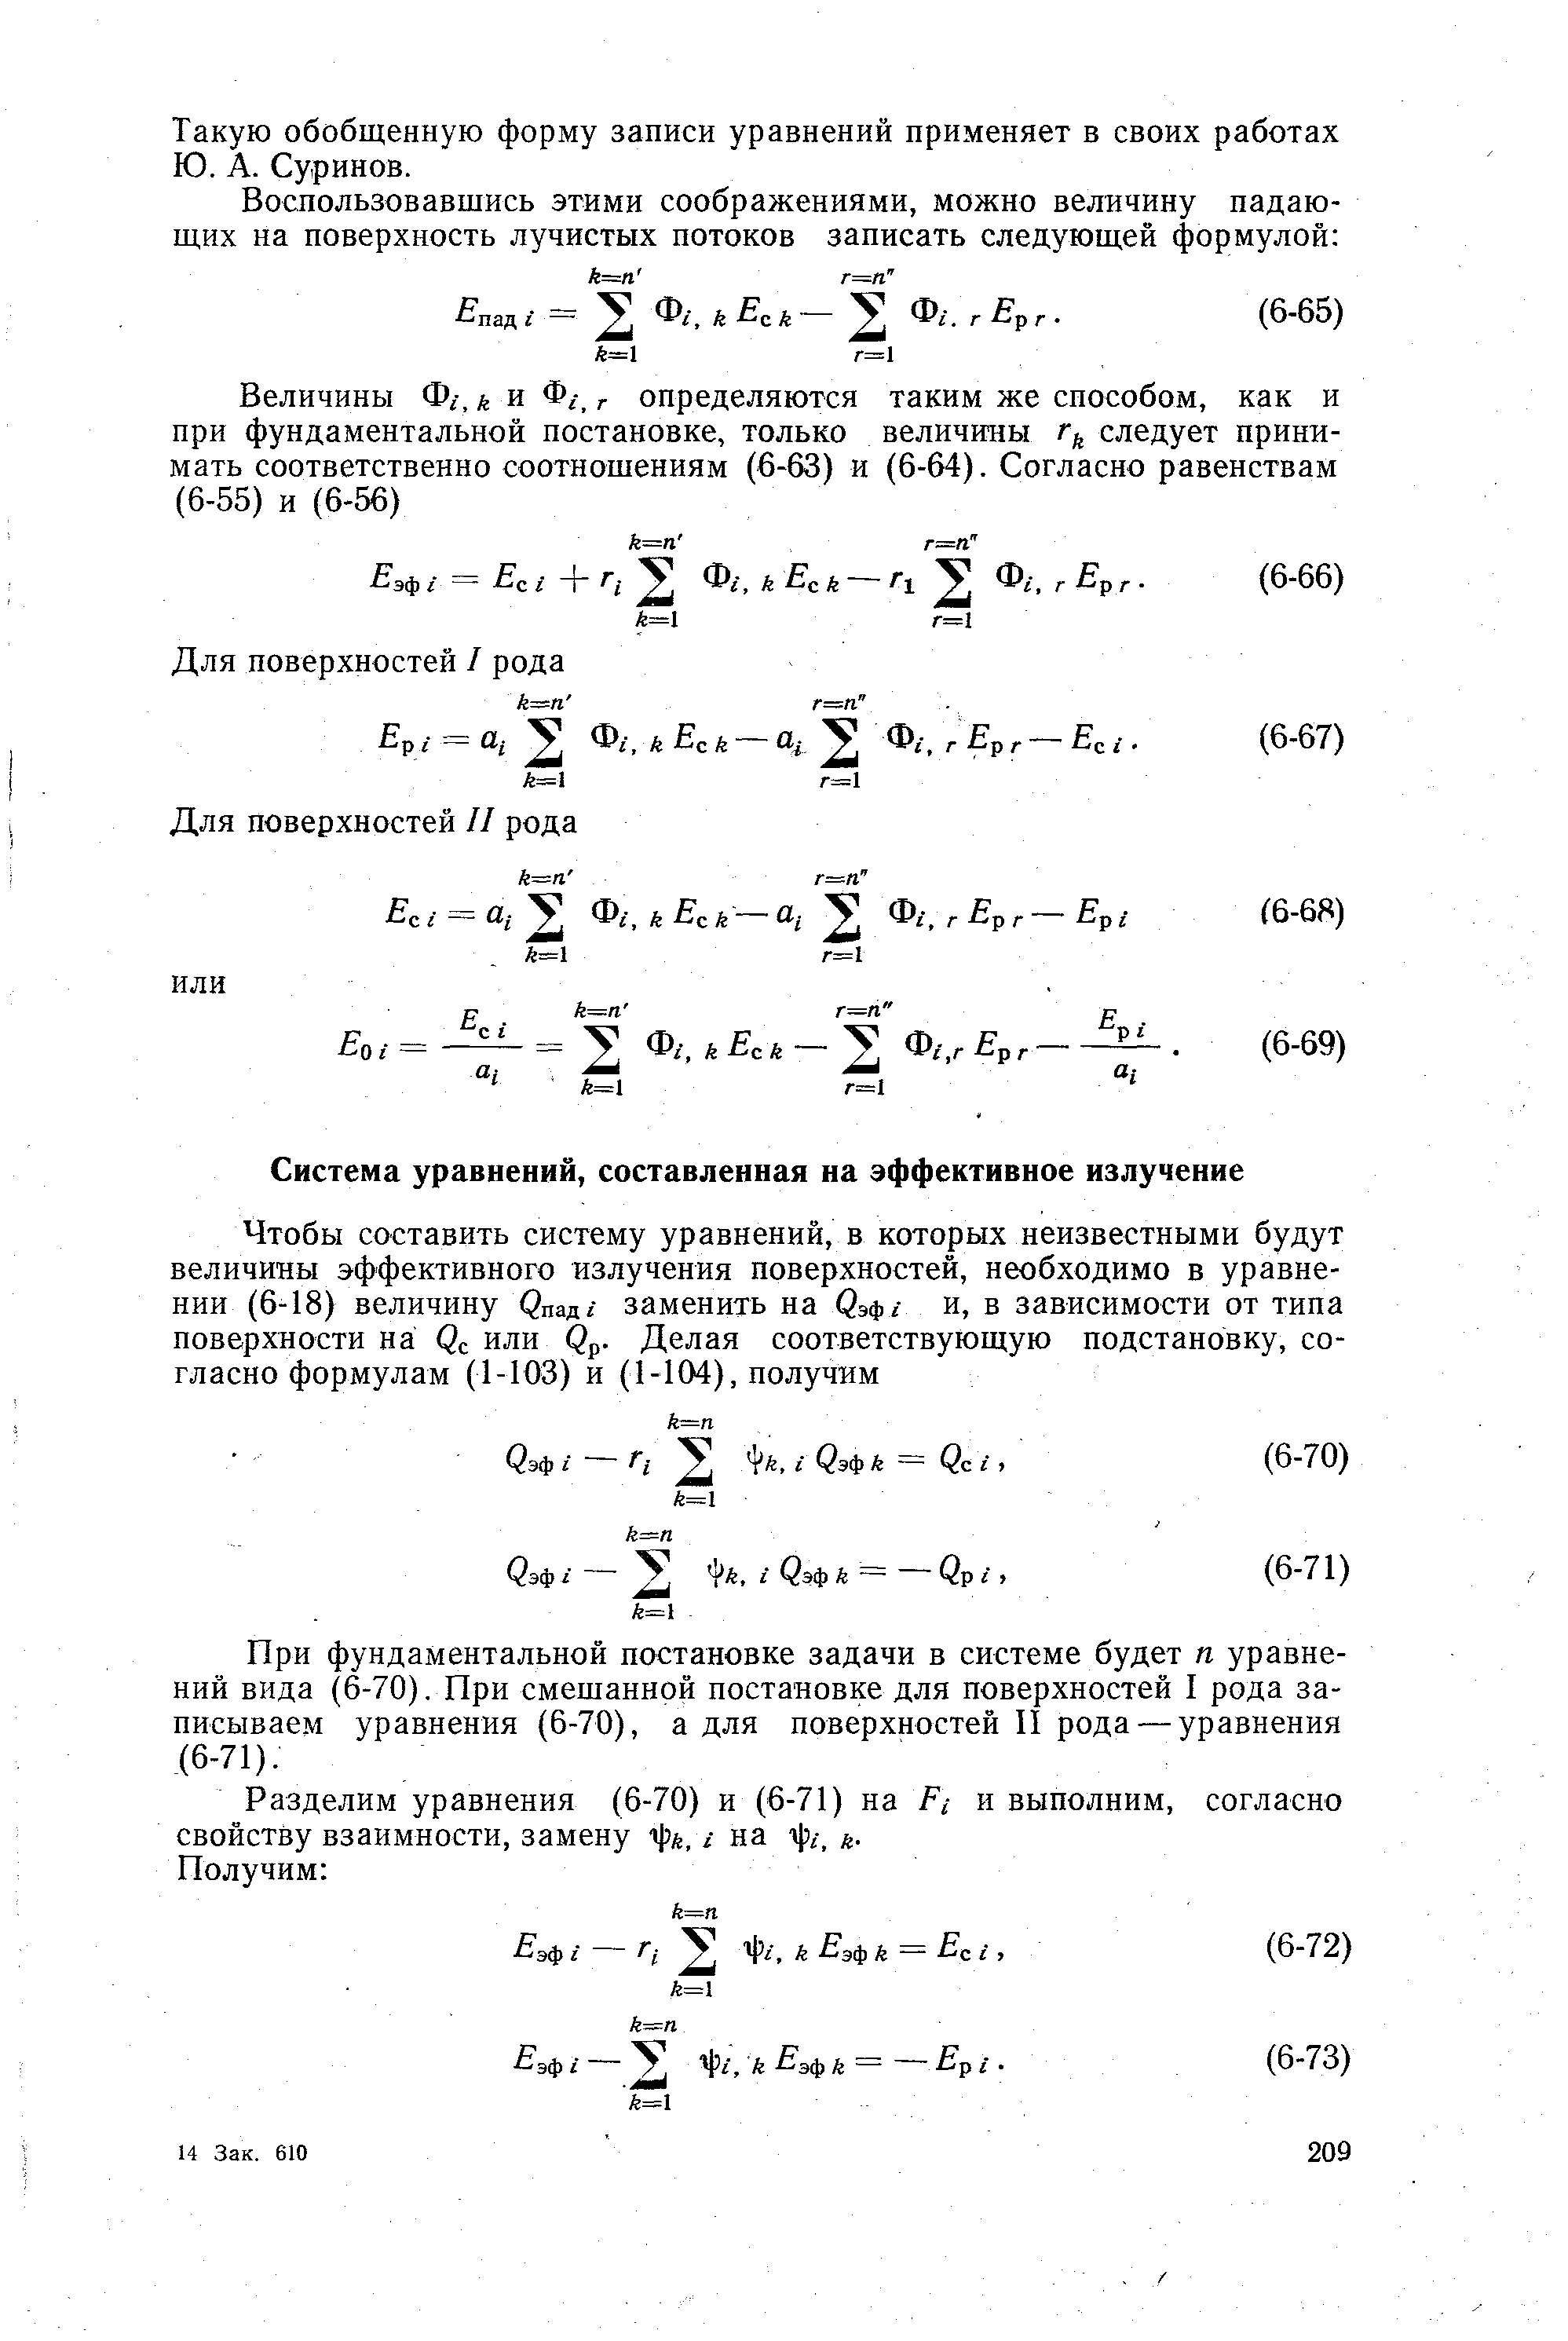 При фундаментальной постановке задачи в системе будет п уравнений вида (6-70). При смешанной постановке для поверхностей I рода записываем уравнения (6-70), а для поверхностей II рода — уравнения (6-71).
